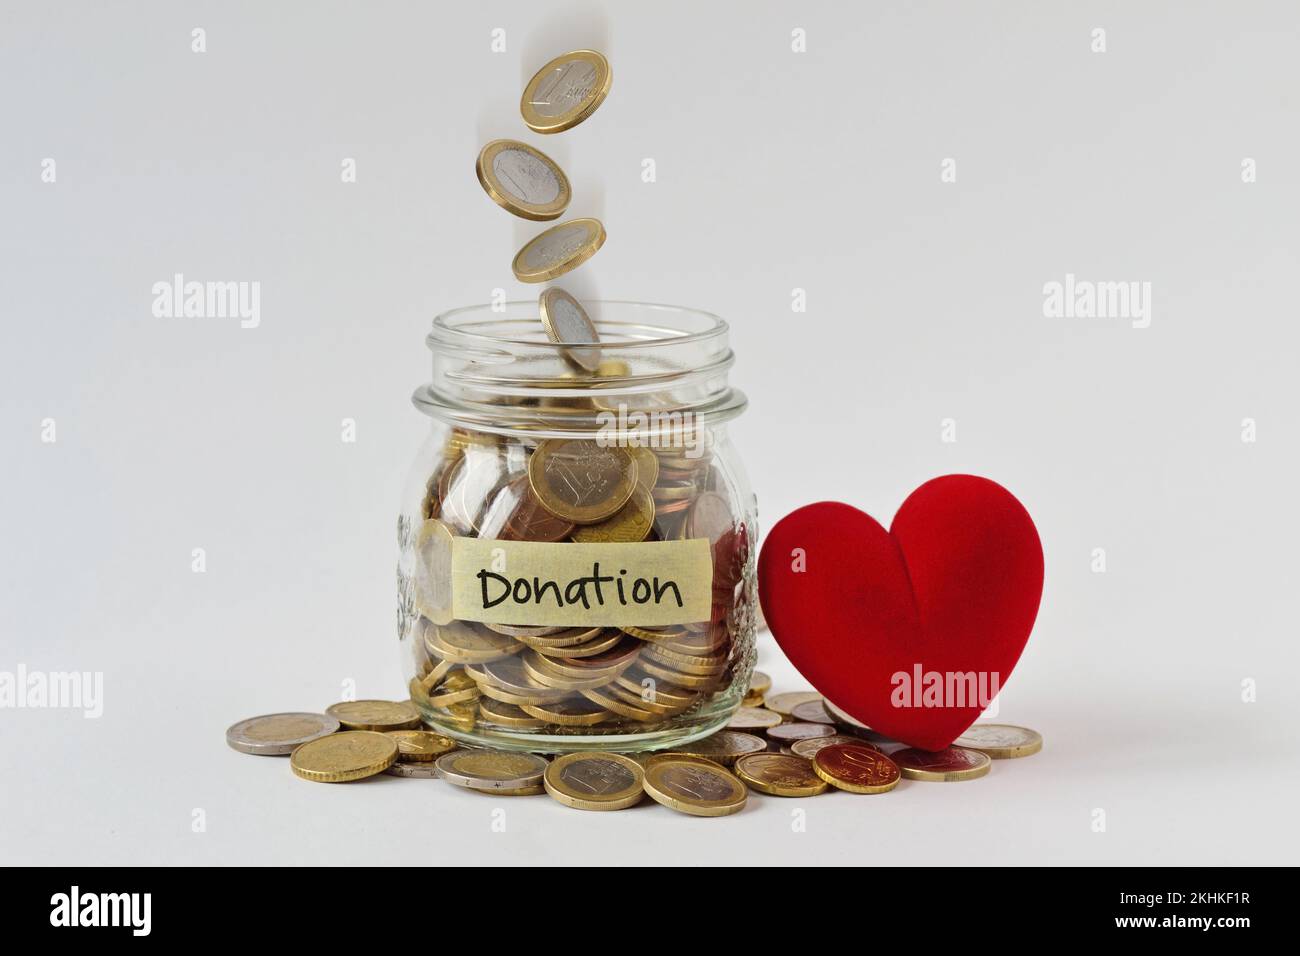 Geldbehälter voller Münzen mit Spendenetikett und Herz - Wohltätigkeits- und Spendenkonzept Stockfoto